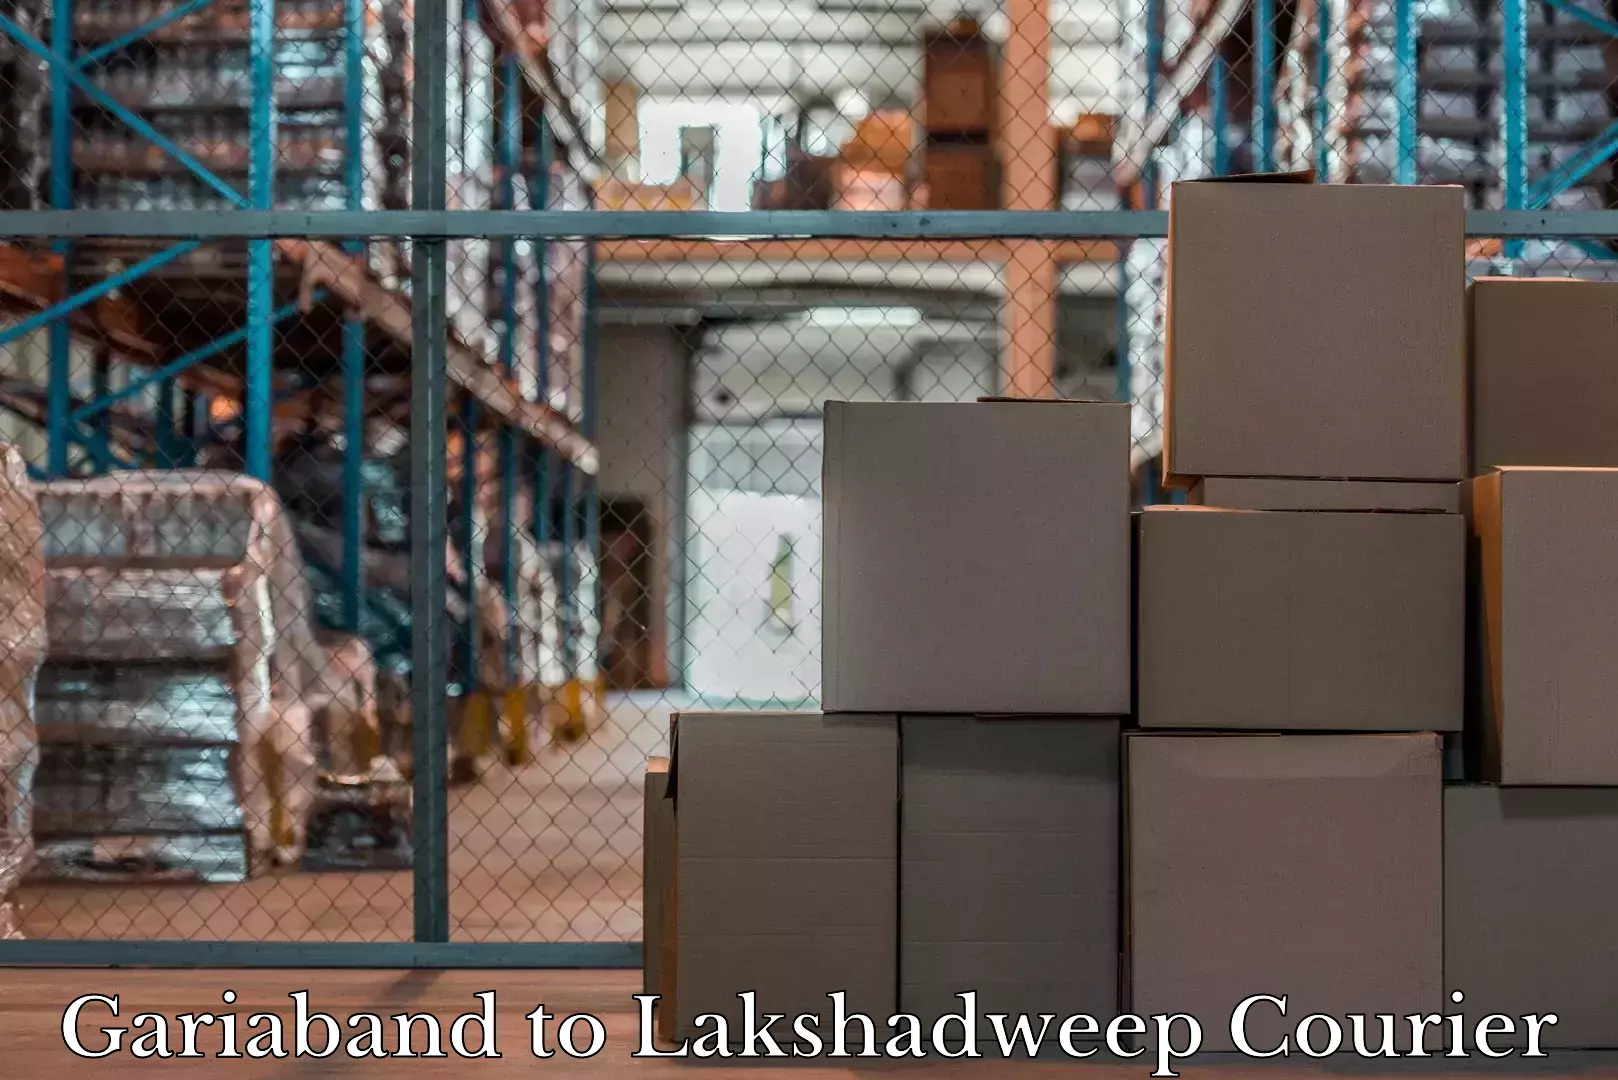 Baggage shipping experience Gariaband to Lakshadweep